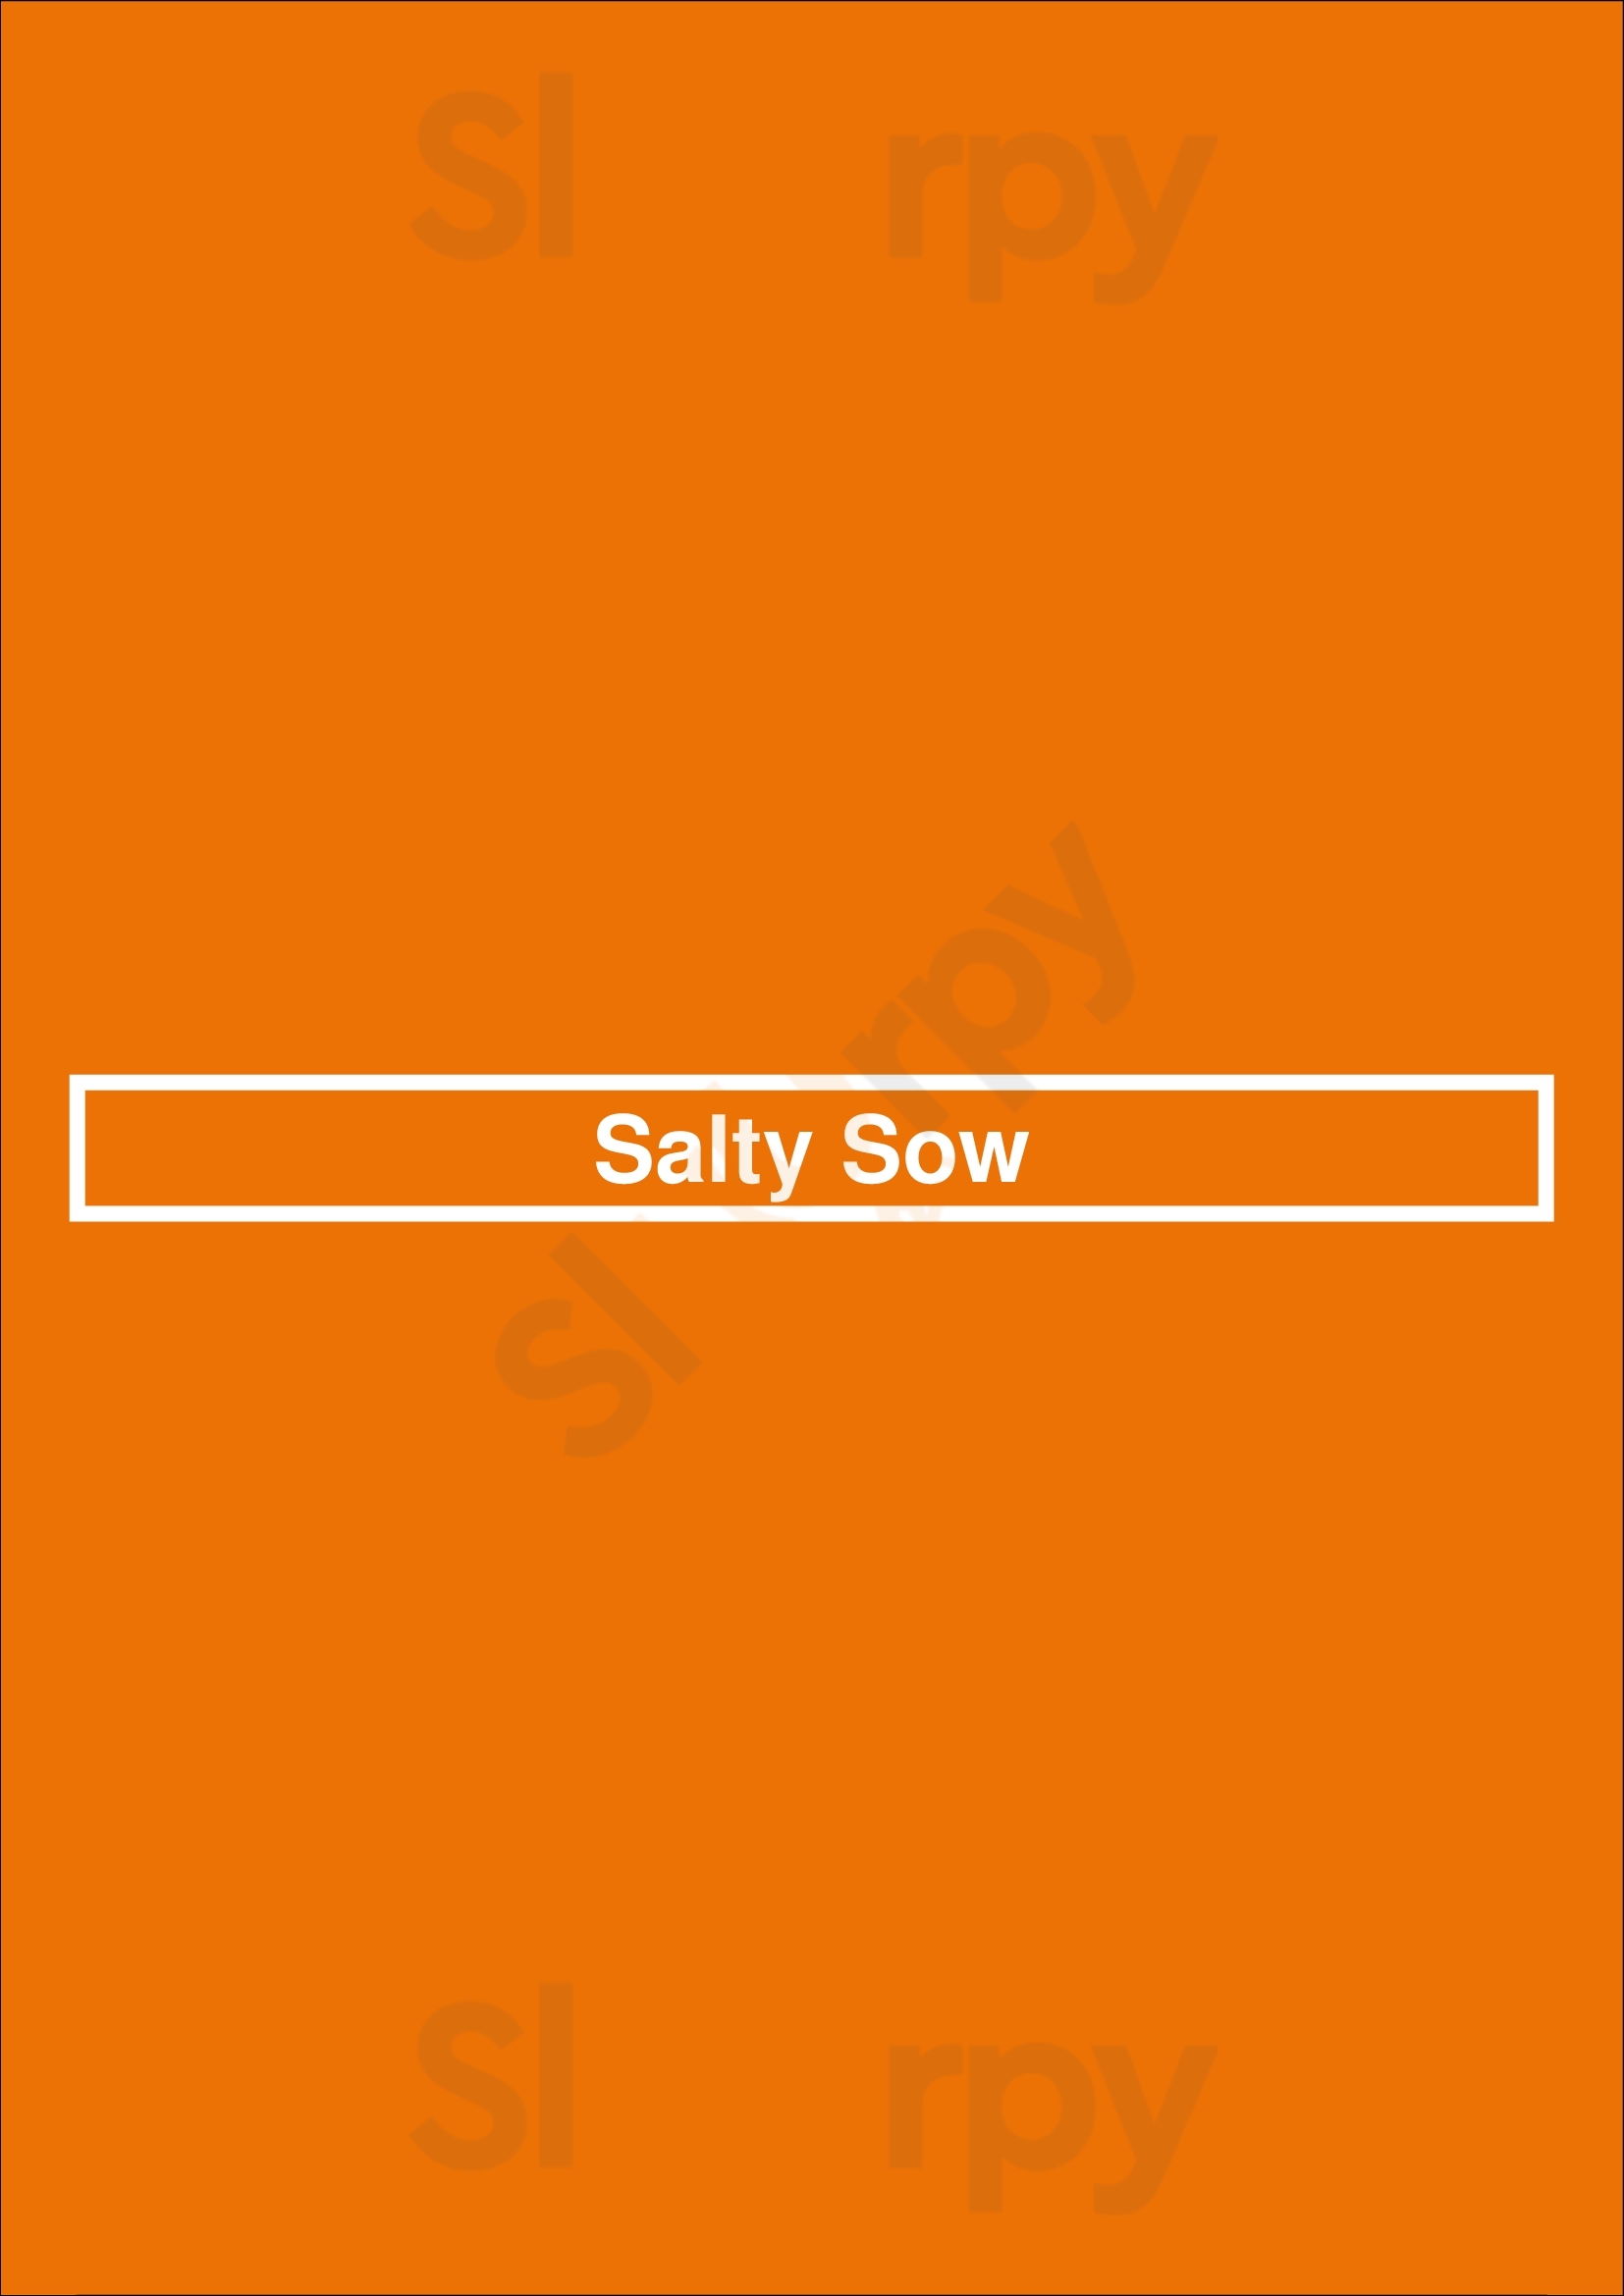 Salty Sow Phoenix Menu - 1